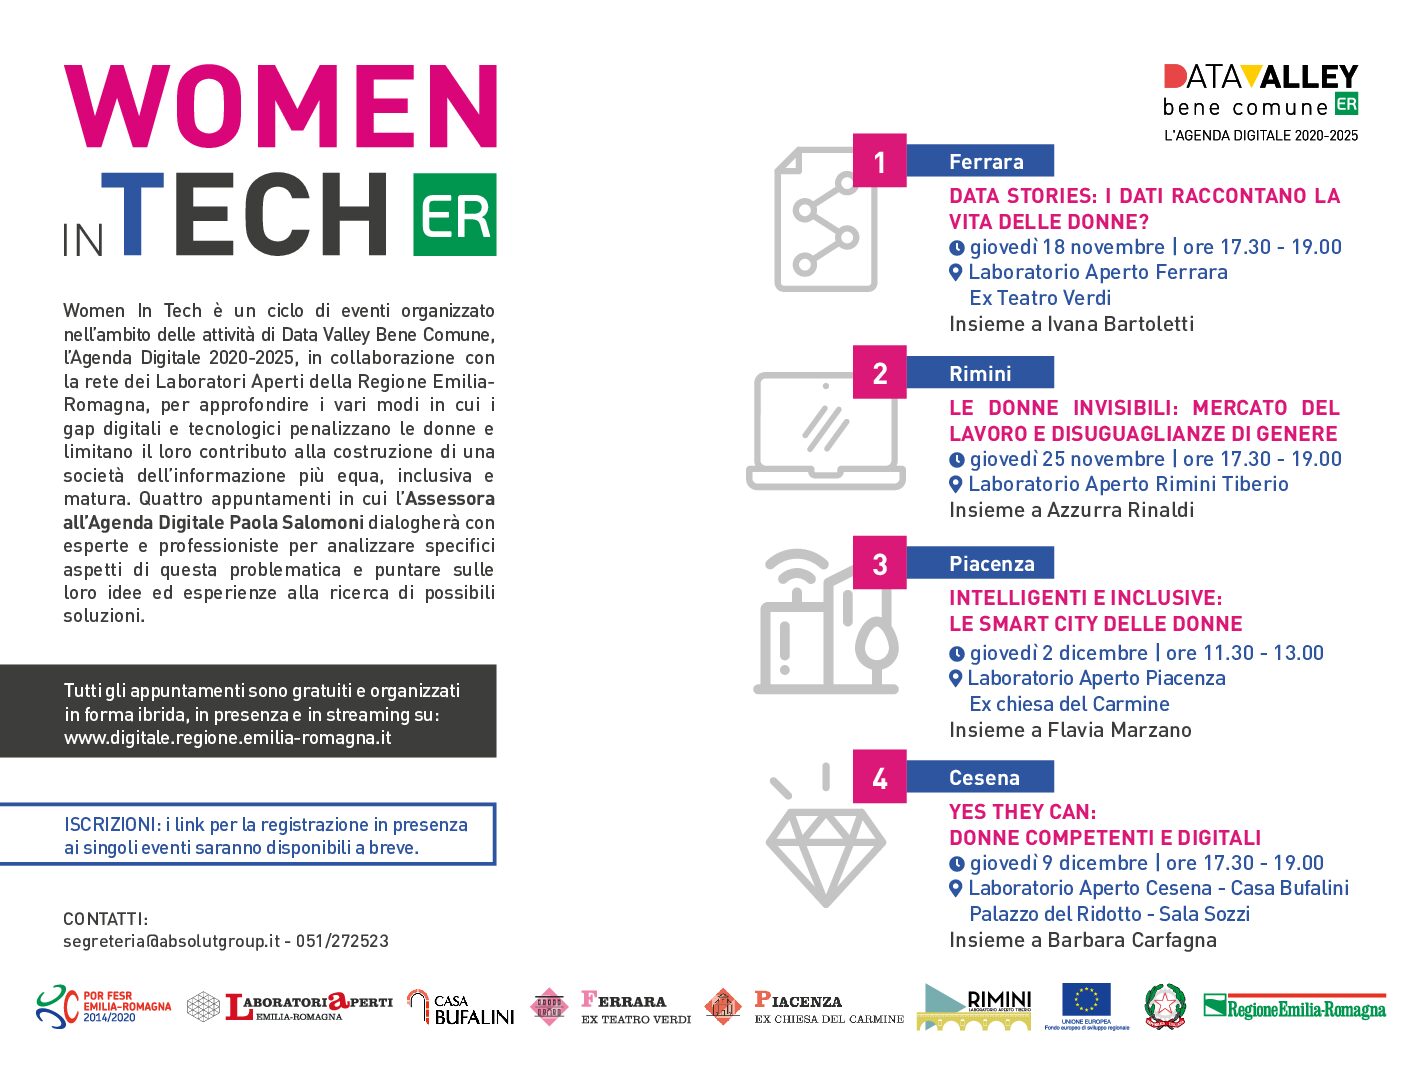 WOMEN IN TECH “Intelligenti e inclusive: le smart city delle donne”